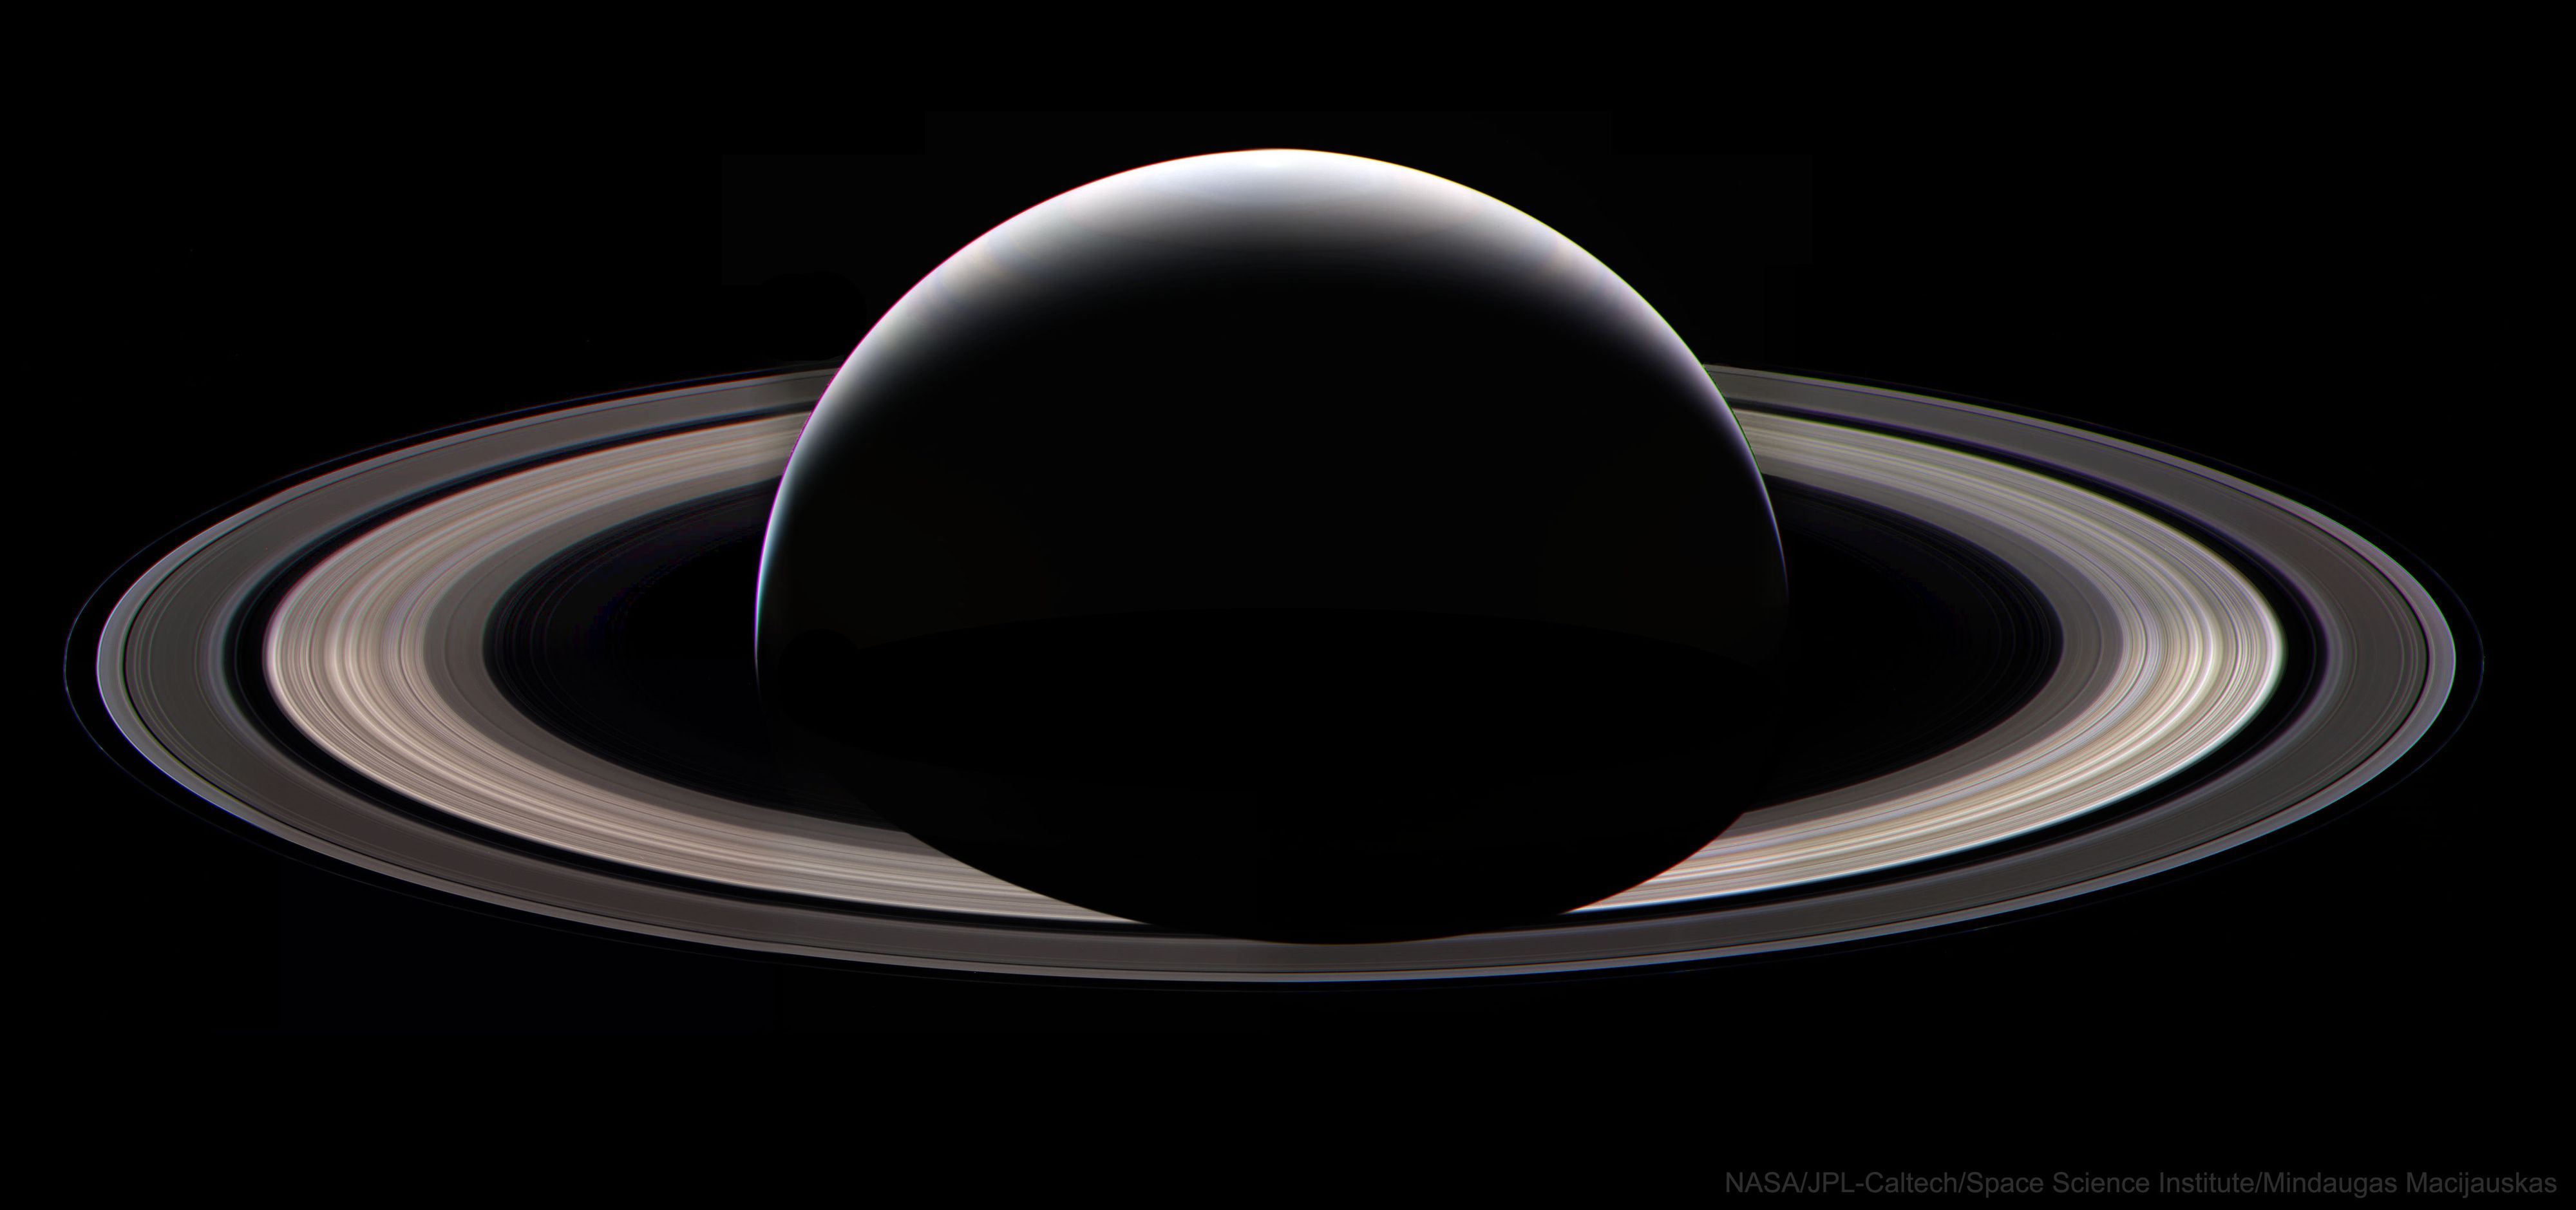  Cassini's Last Ring Portrait at Saturn 